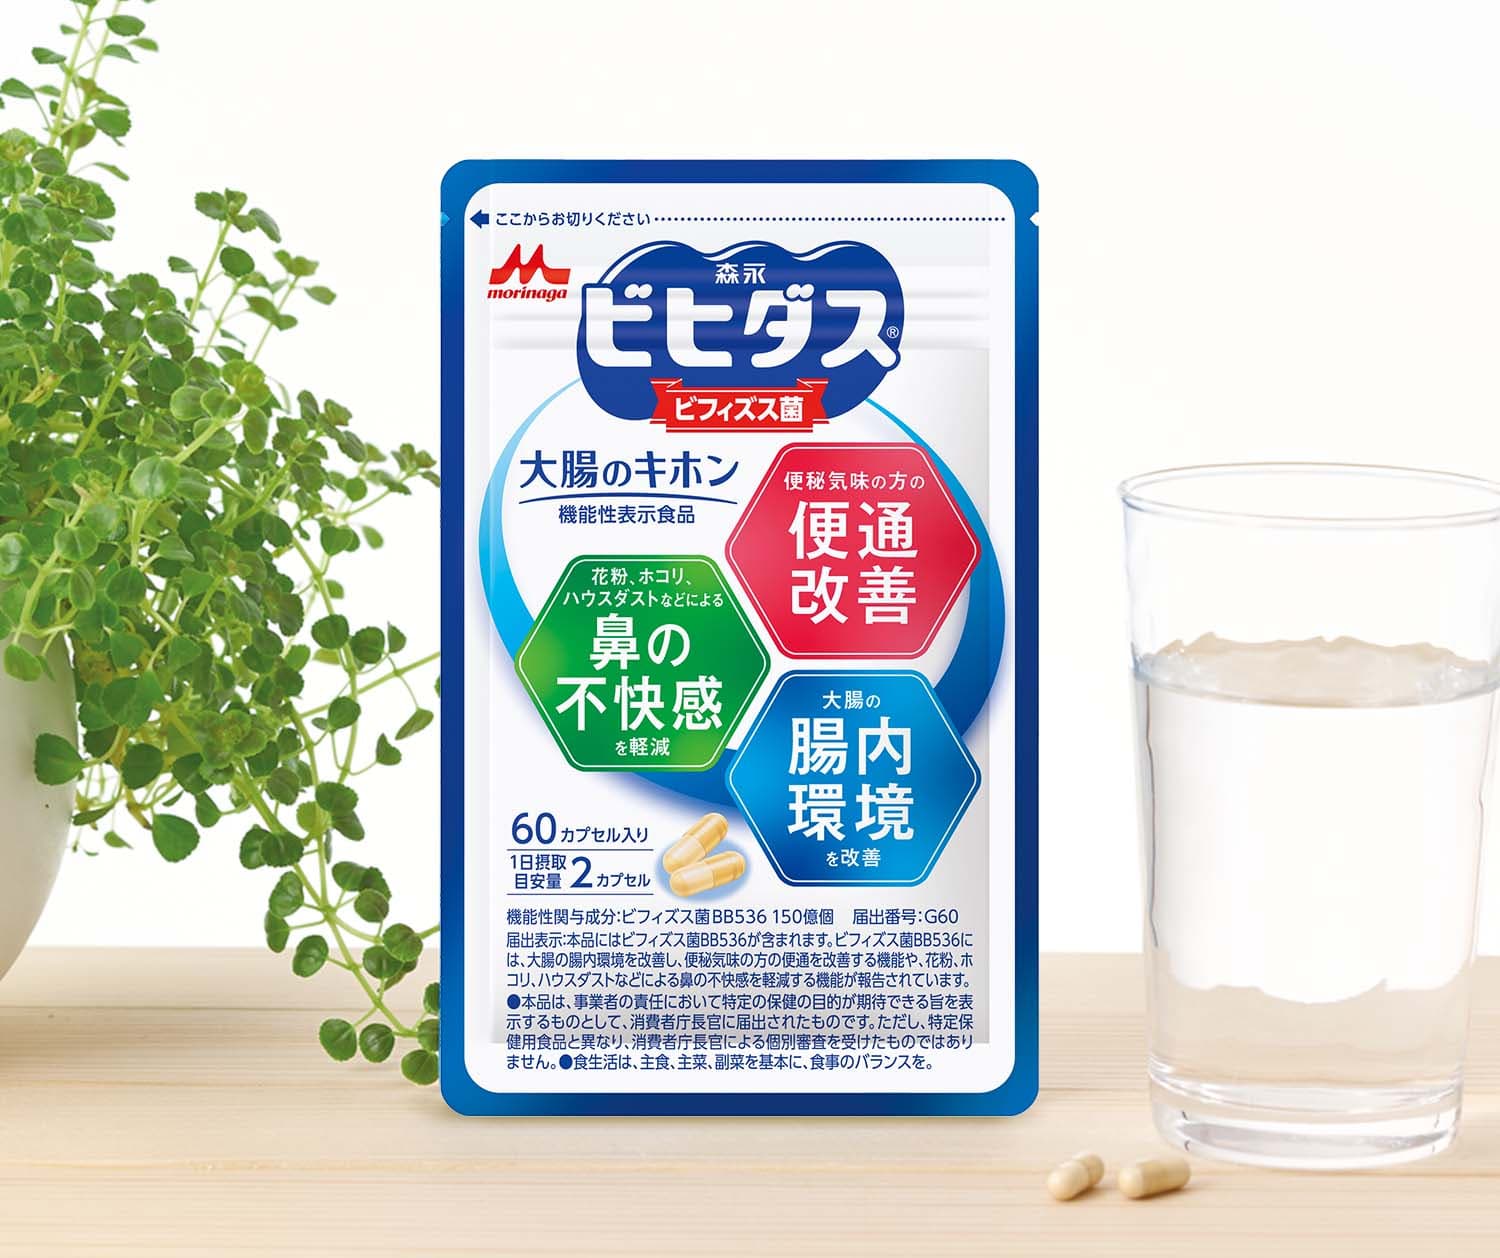 日本森永乳酸菌ビヒダス,雙歧桿菌BB536機能性保健食品 日本製【秀太郎屋】